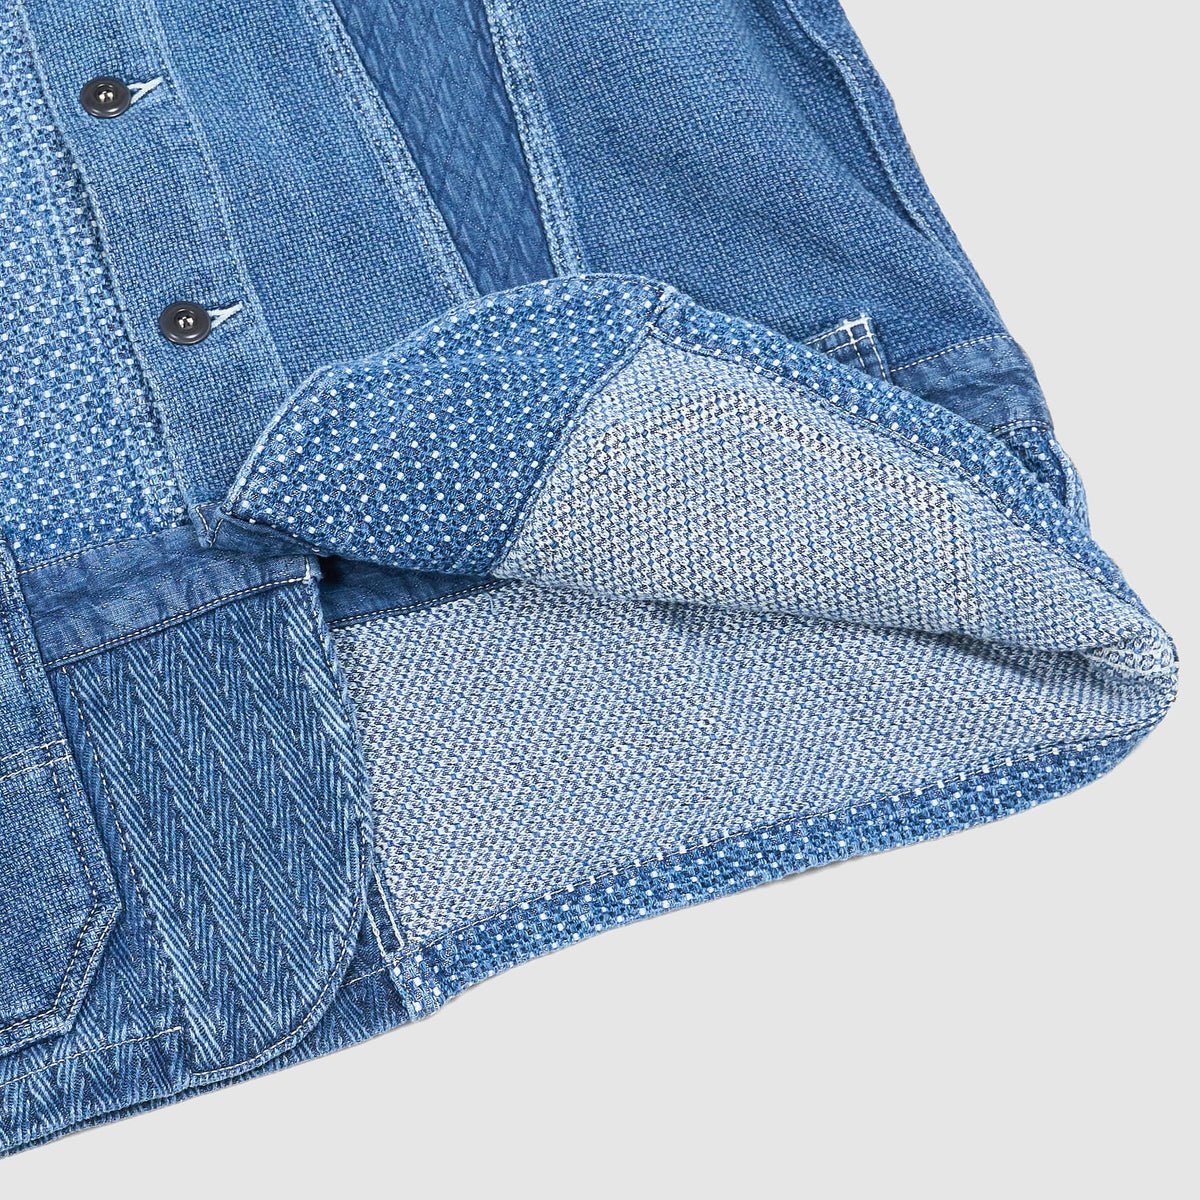 FDMTL Denim Patchwork 3-YR -Washed Denim Blazer Jacket